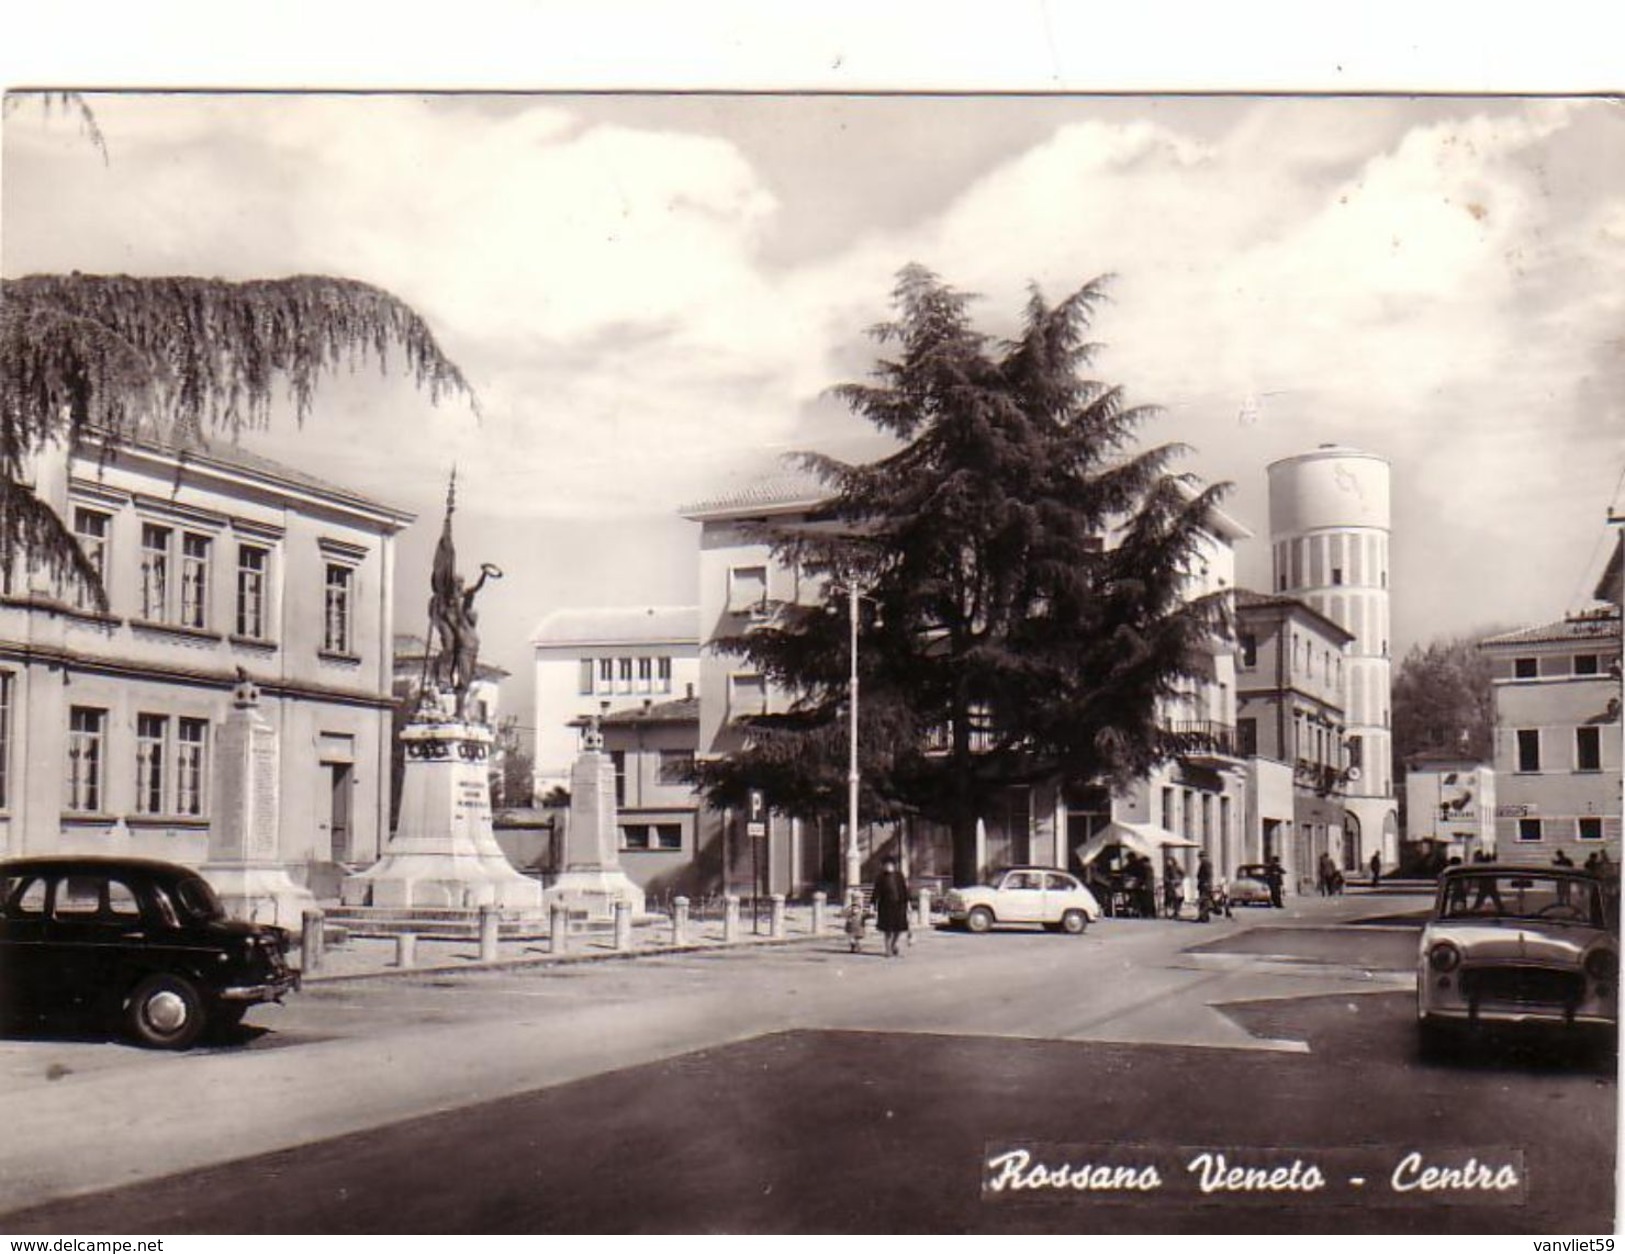 ROSSANO VENETO-VICENZA-CENTRO-AUTOMOBILI IN PRIMO PIANO-CARTOLINA VERA FOTOGRAFIA-VIAGGIATA IL 24-8-1963 - Vicenza